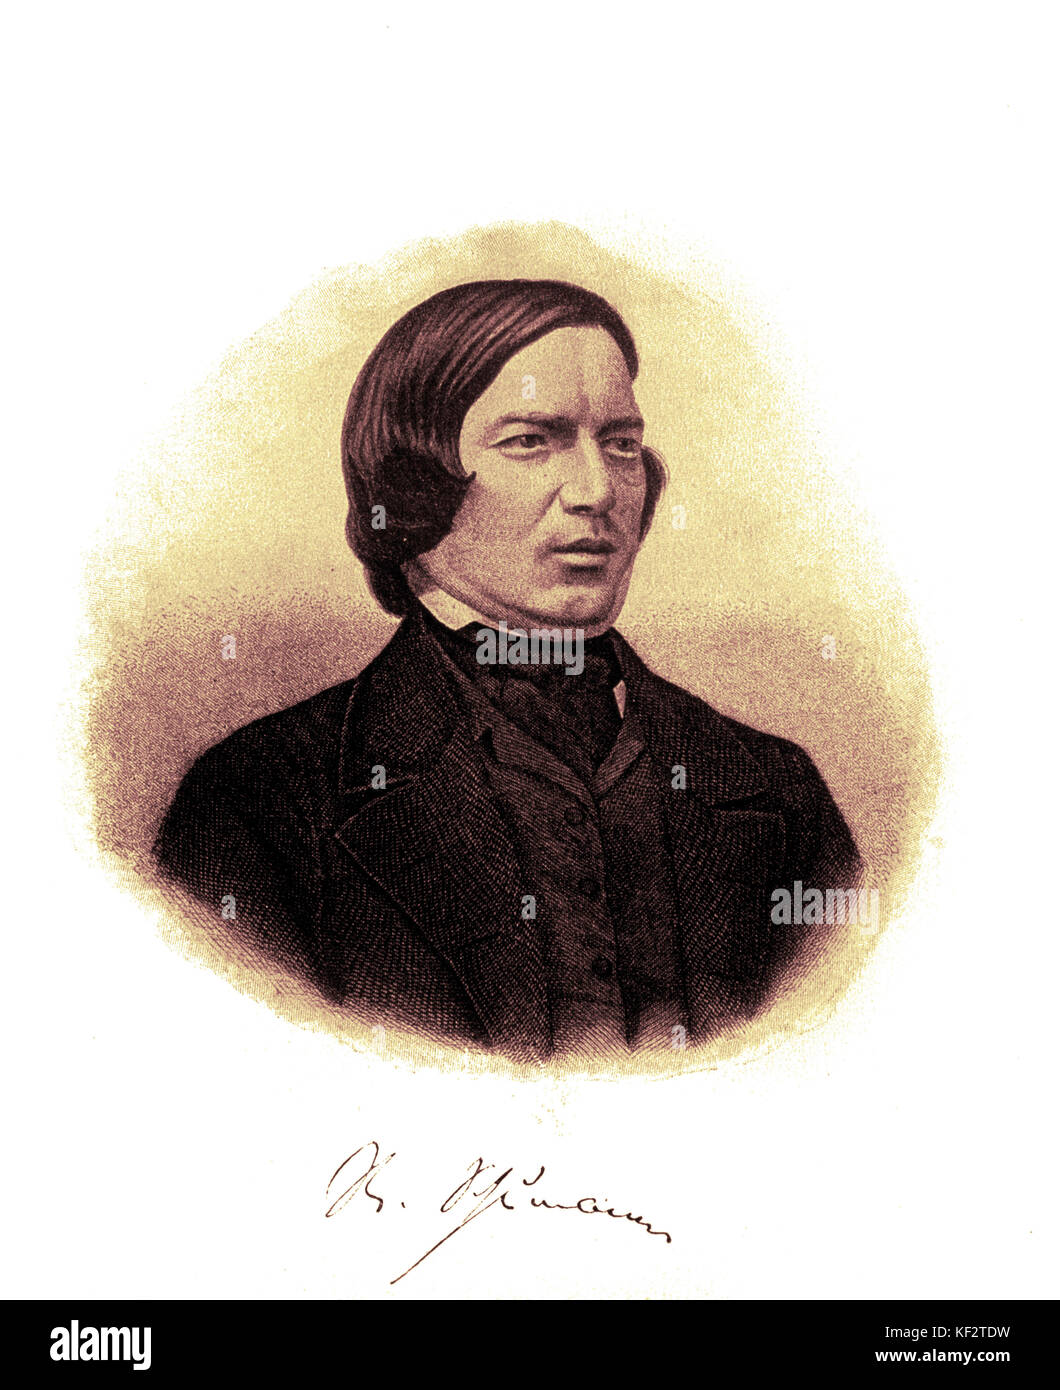 SCHUMANN, Robert- Portrait. Robert Schumann. Compositeur allemand (1810-1856) Banque D'Images